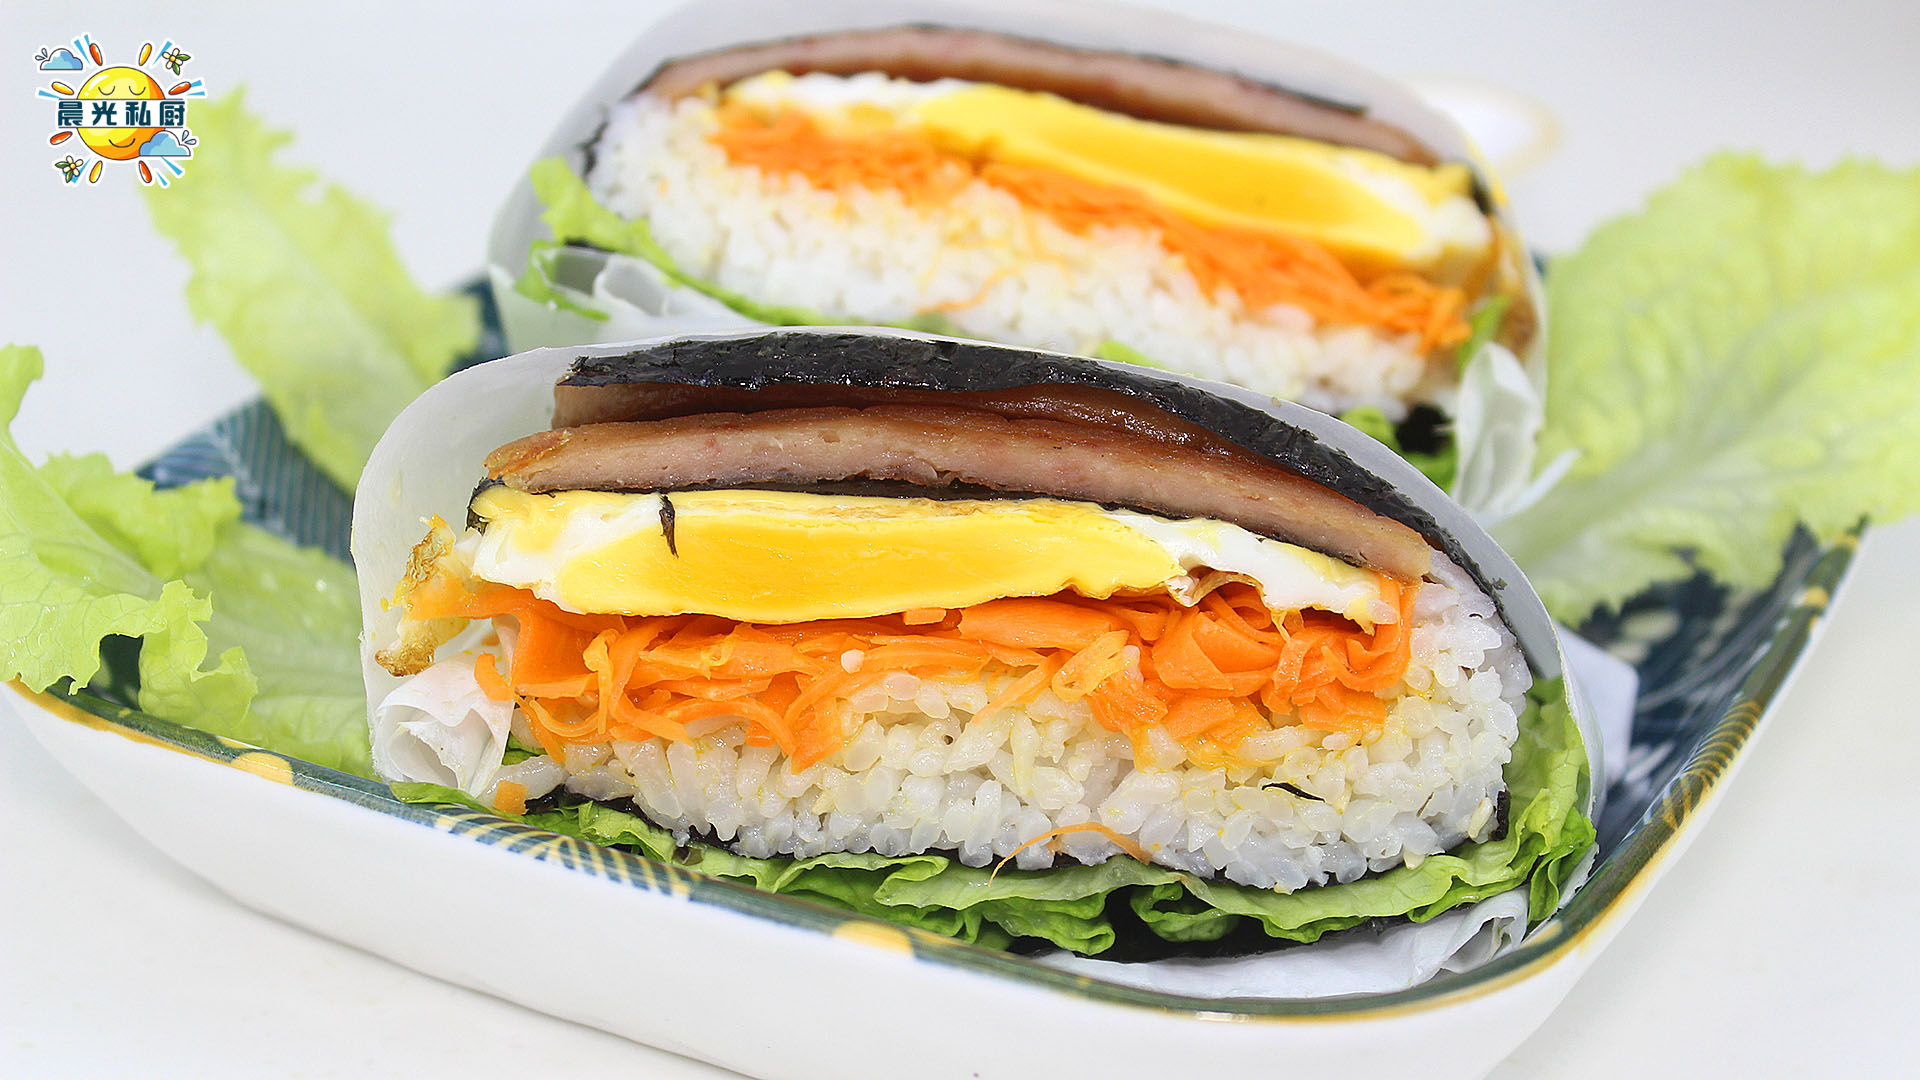 另类紫菜包饭：米饭三明治，制作简单便捷，早、中、晚餐都可食用